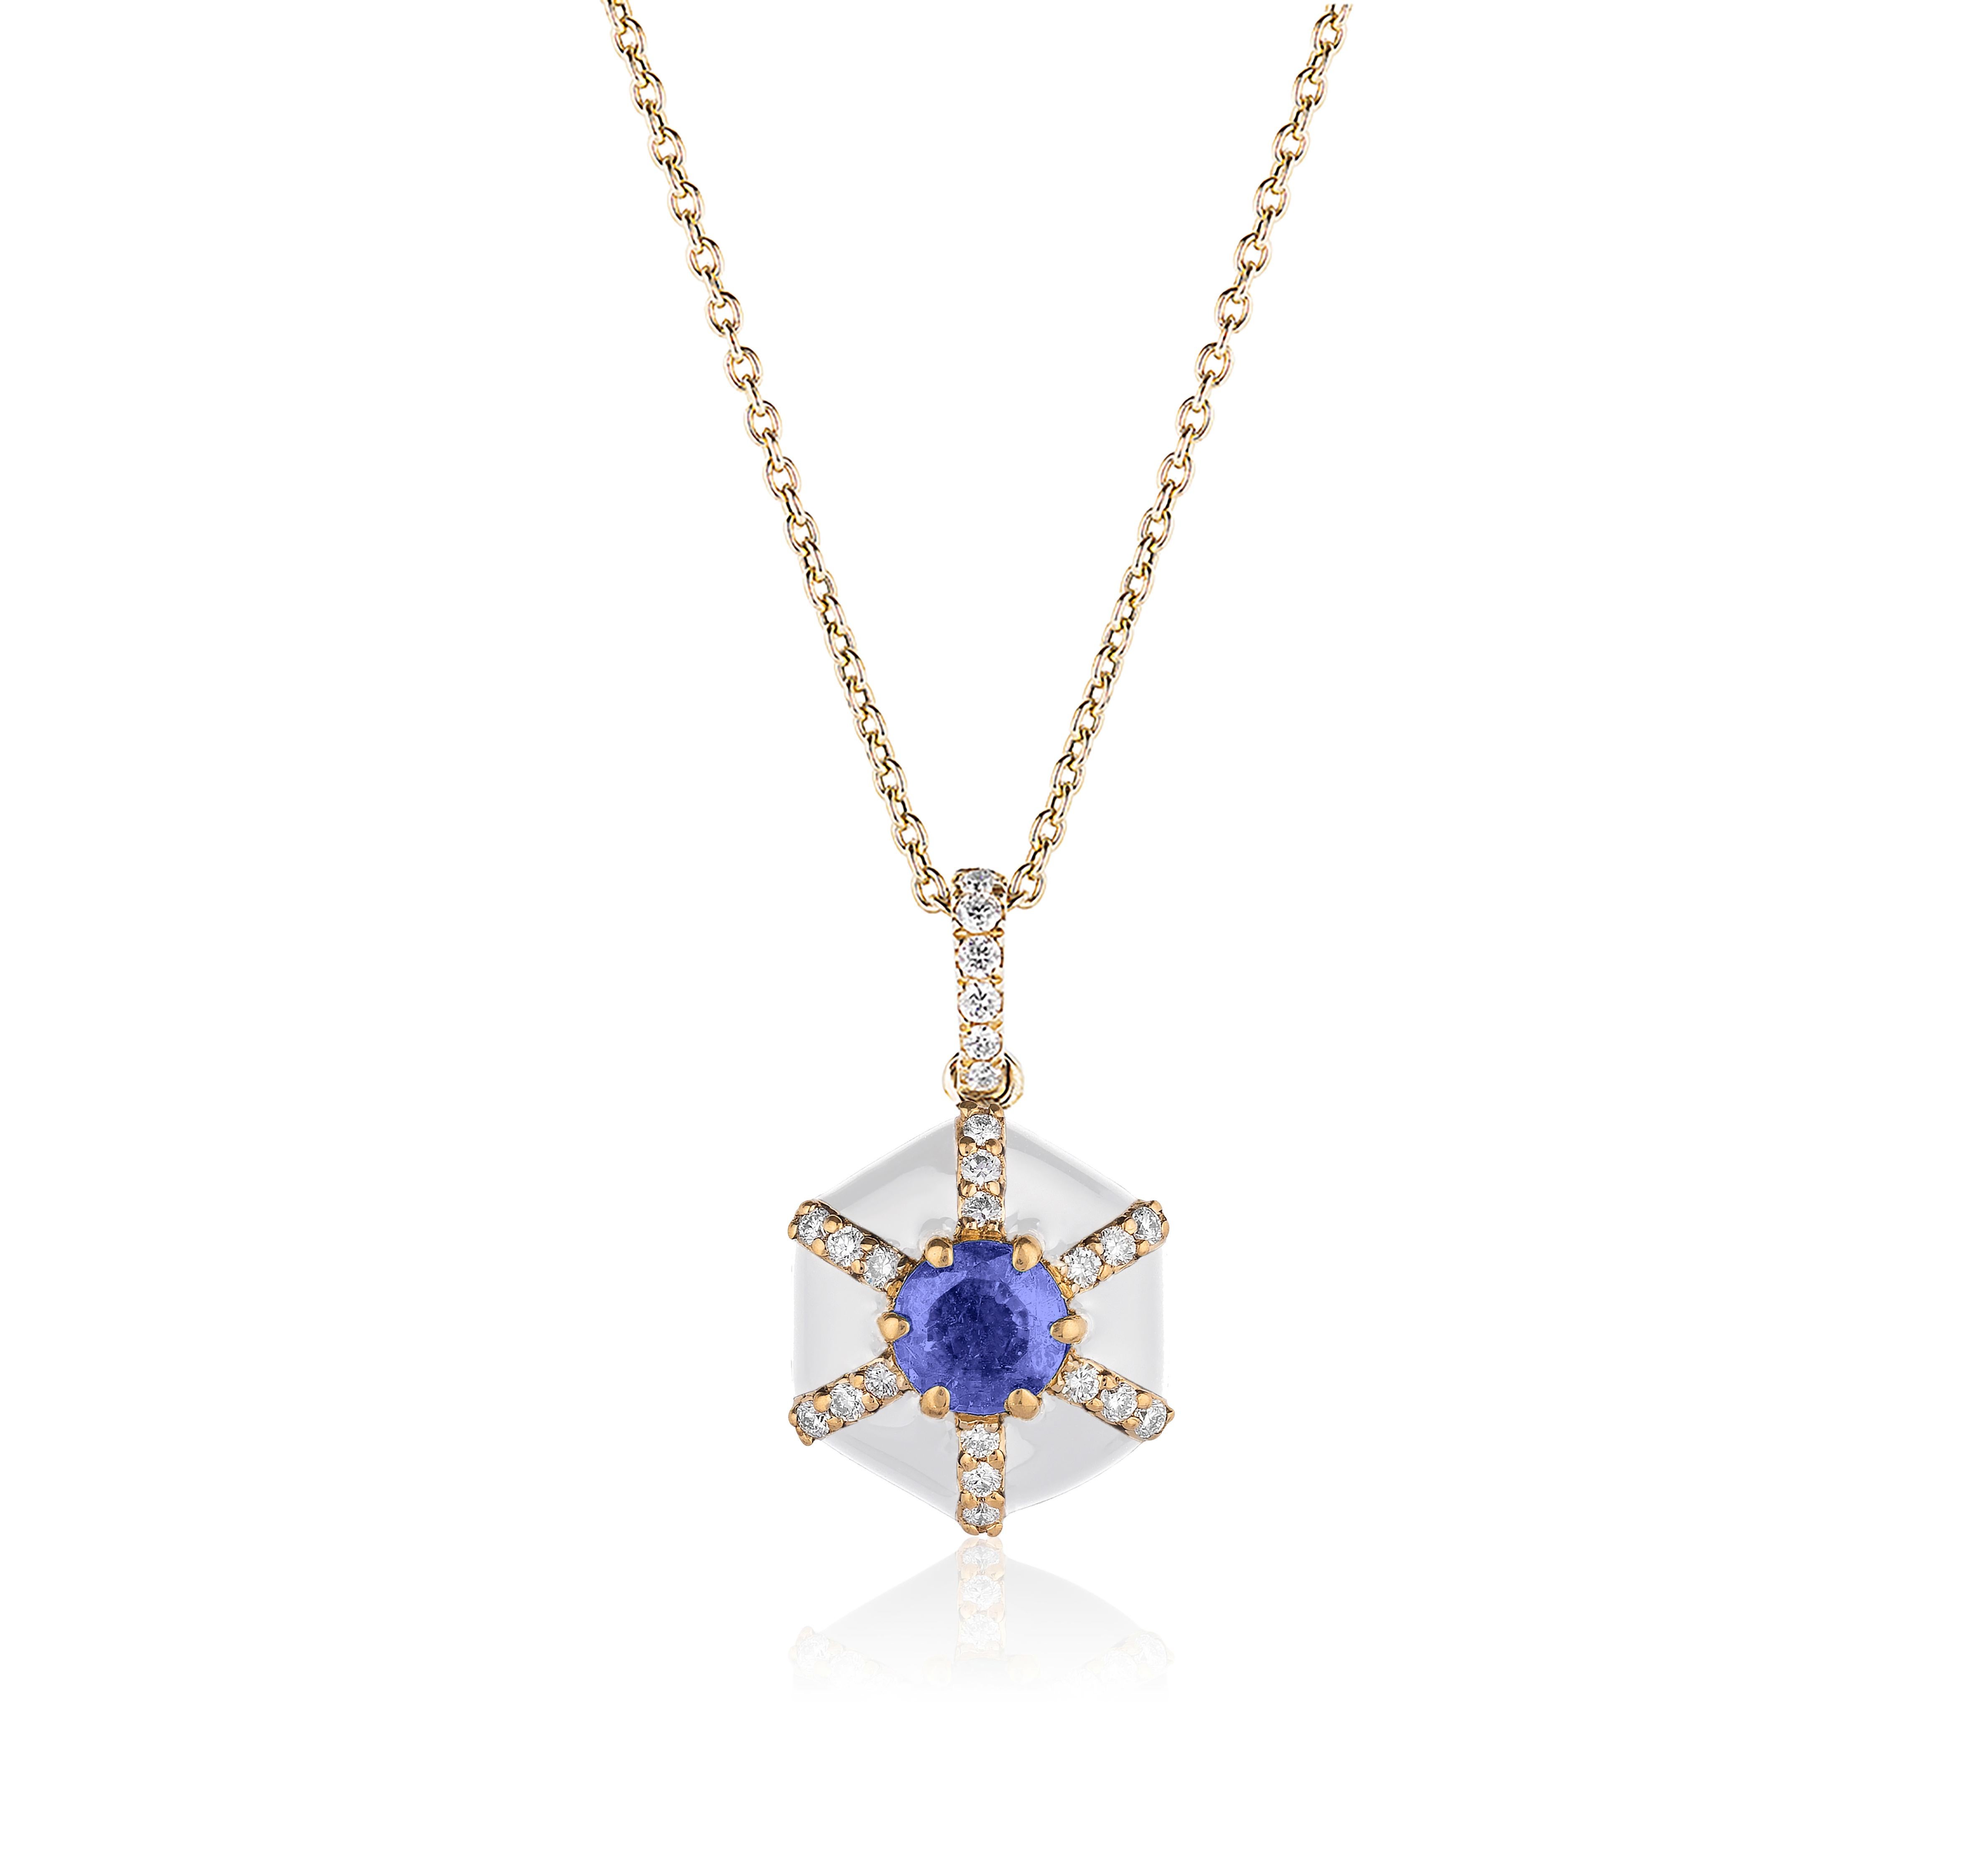 Hexagon Cut Goshwara Hexagon White Enamel with Sapphire and Diamonds Pendant For Sale